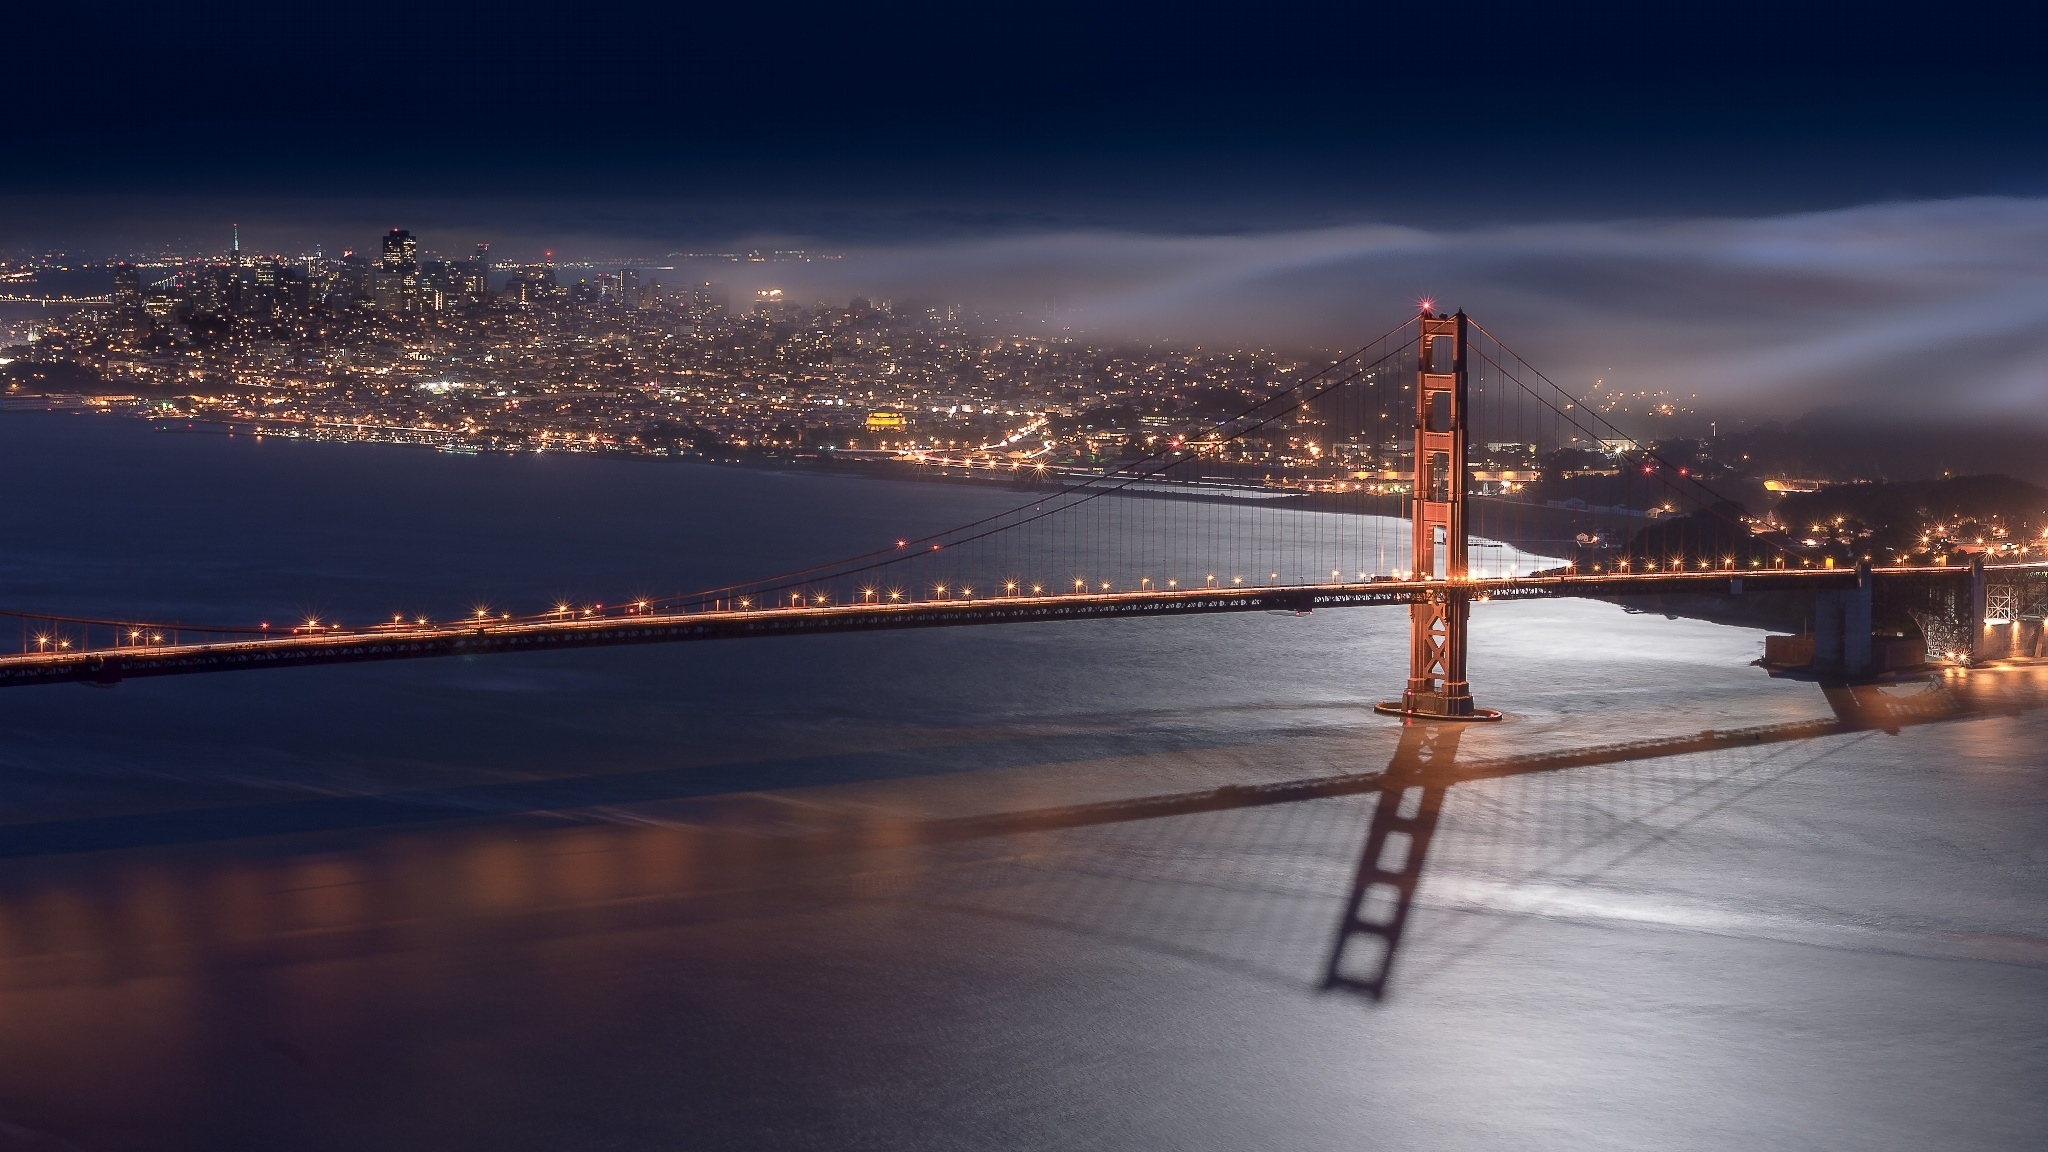 Фотографии размером 1024 2048 пикселей сохранили. Сан-Франциско (Калифорния). Мост Лос Анджелес. Мост Сан Матео в Сан-Франциско. Ночной Сан Франциско.